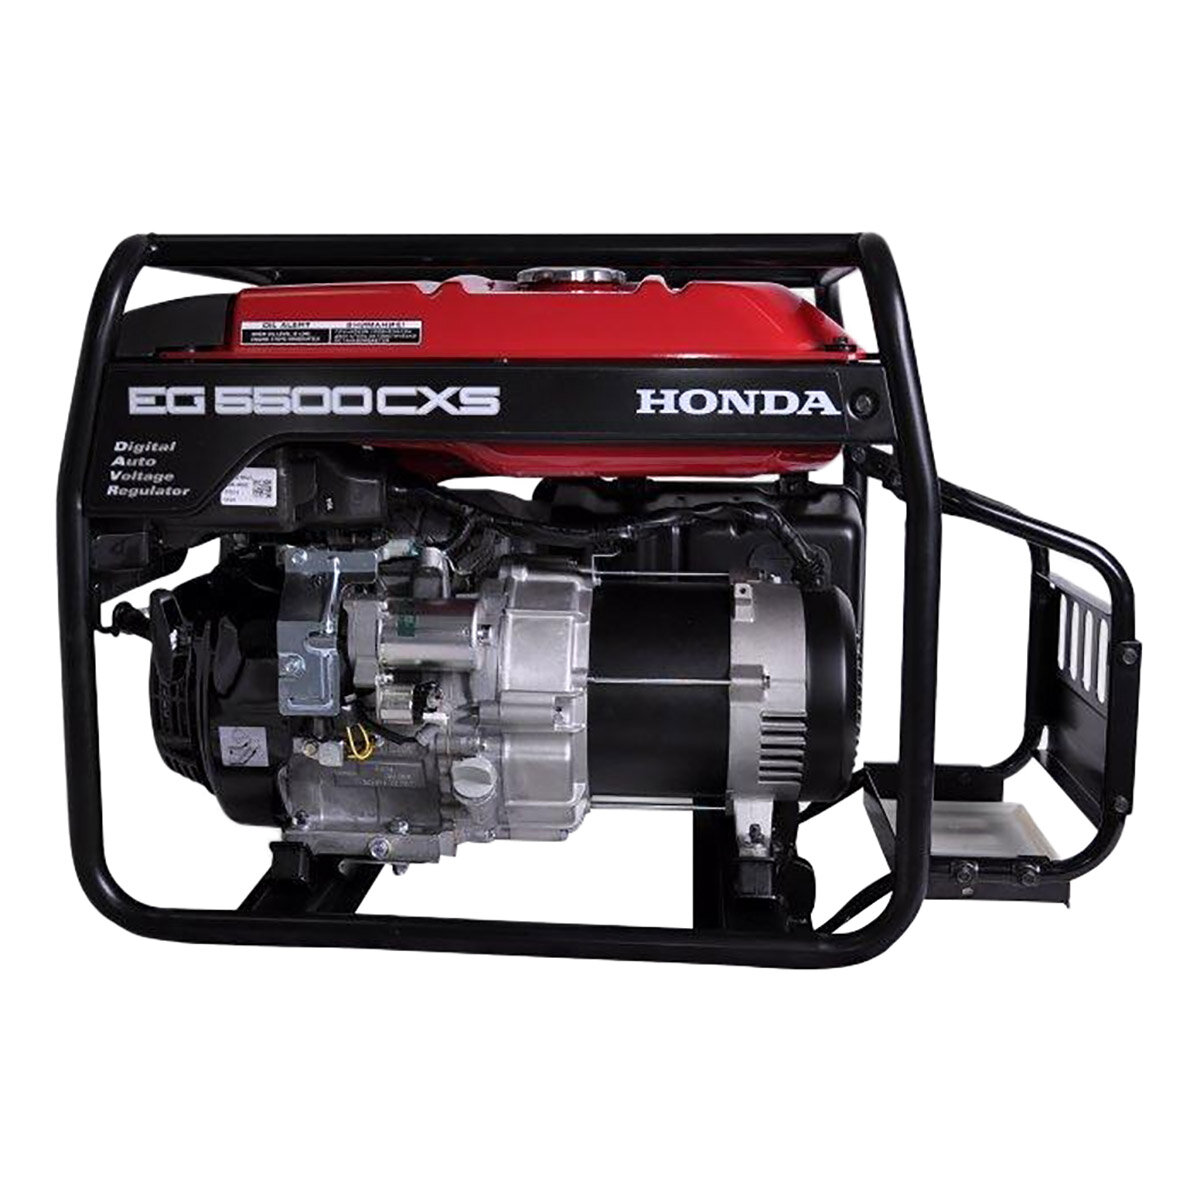 Honda 5500cxs. Бензиновый Генератор Honda eg5500cxs 5.5 КВТ. Генератор Honda 5500. Бензогенератор Honda EG 5500. Генератор Хонда 5.5 EG 5500 CXS.